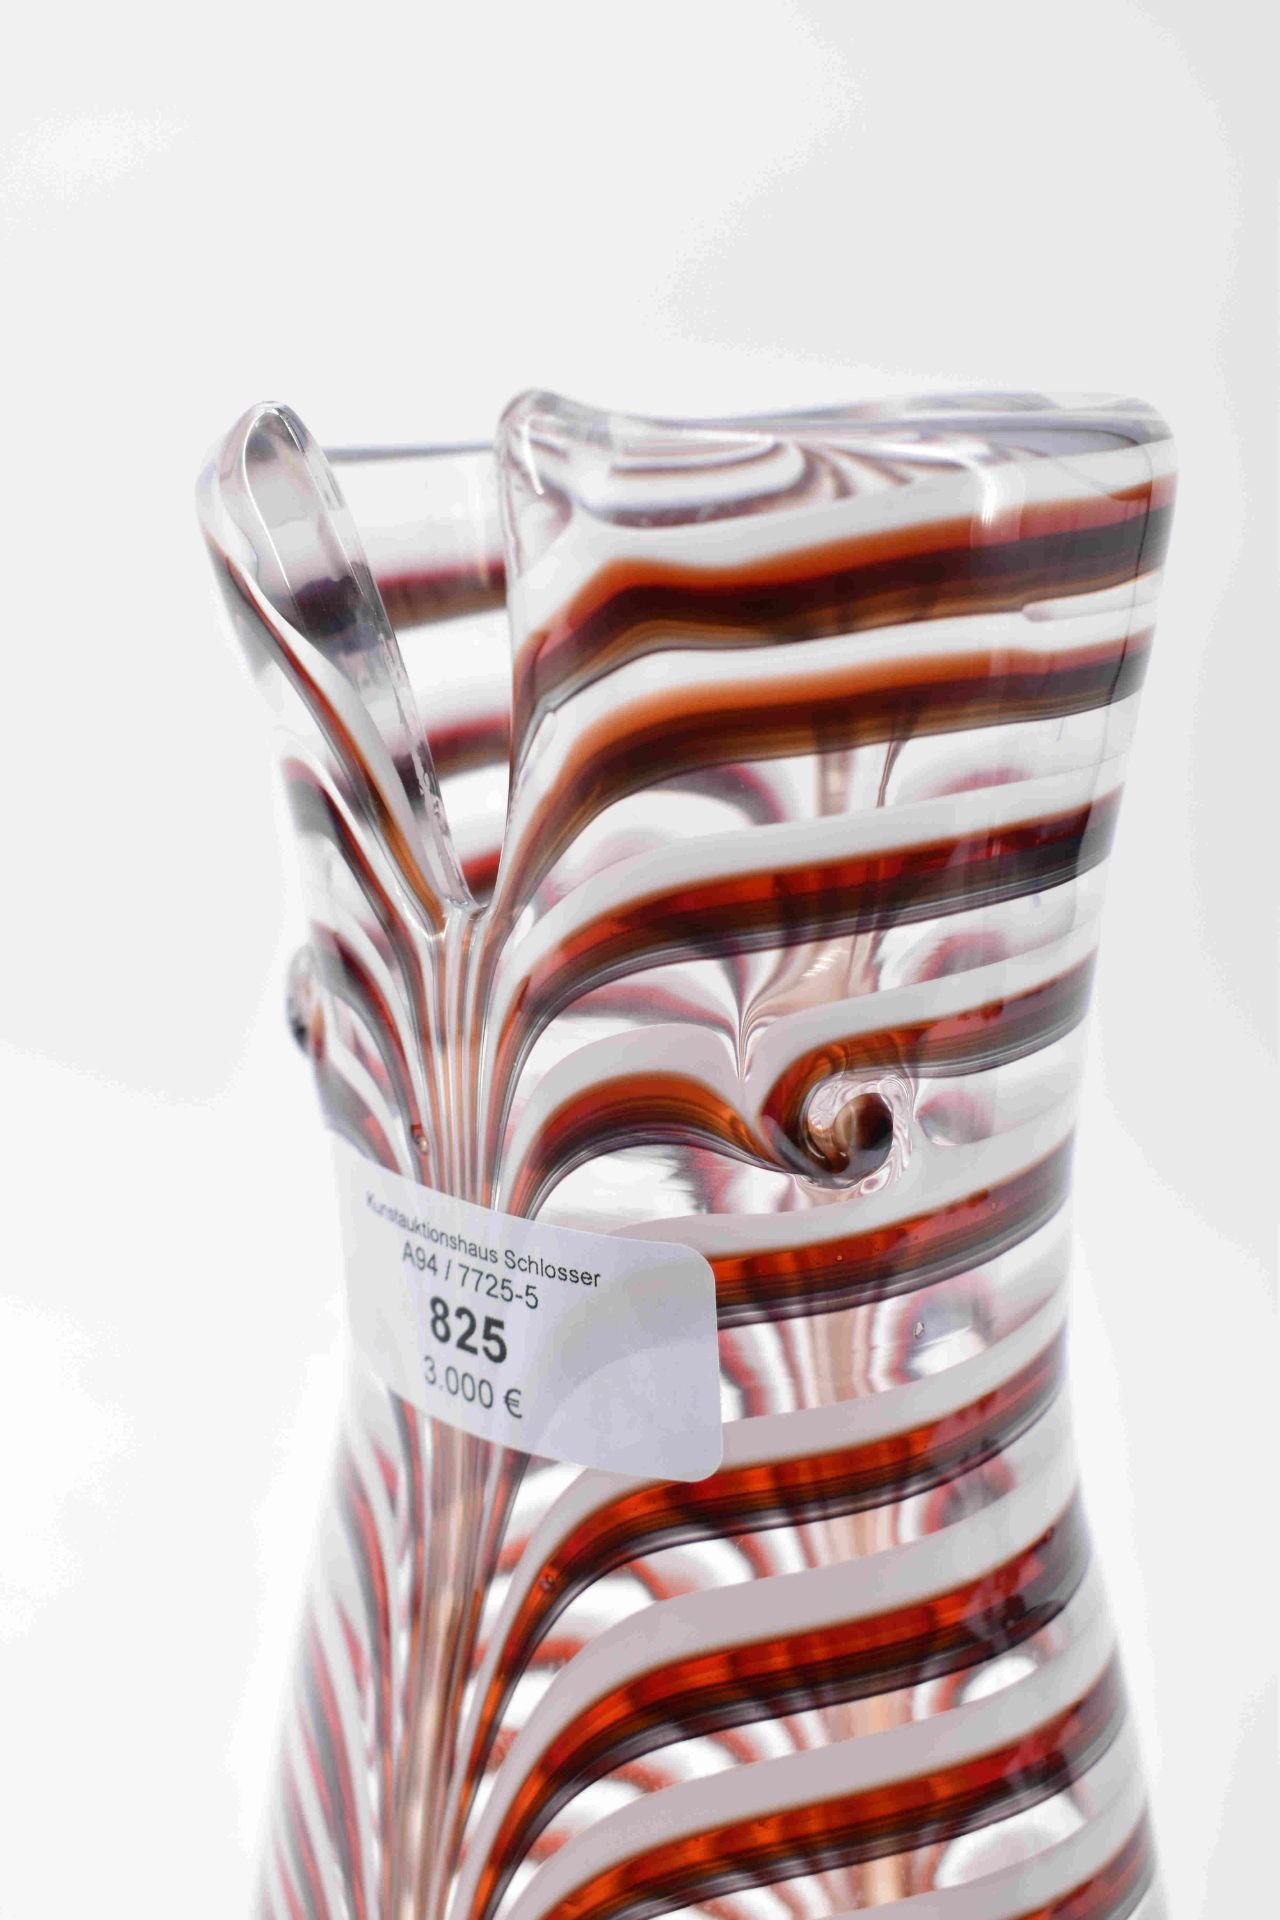 Bianconi, Fulvio: Vase "Bikini" - Image 3 of 10